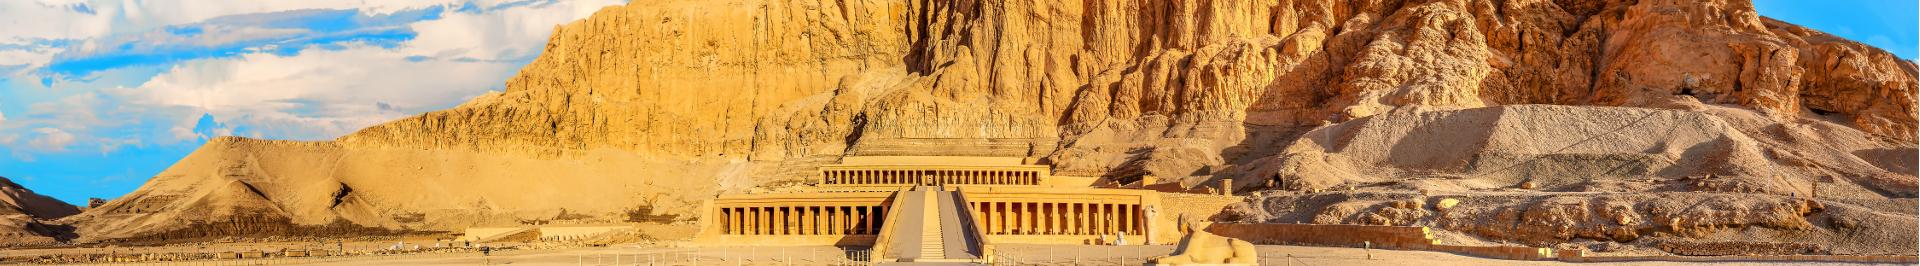 Egypte - Louxor et la Vallée du Nil